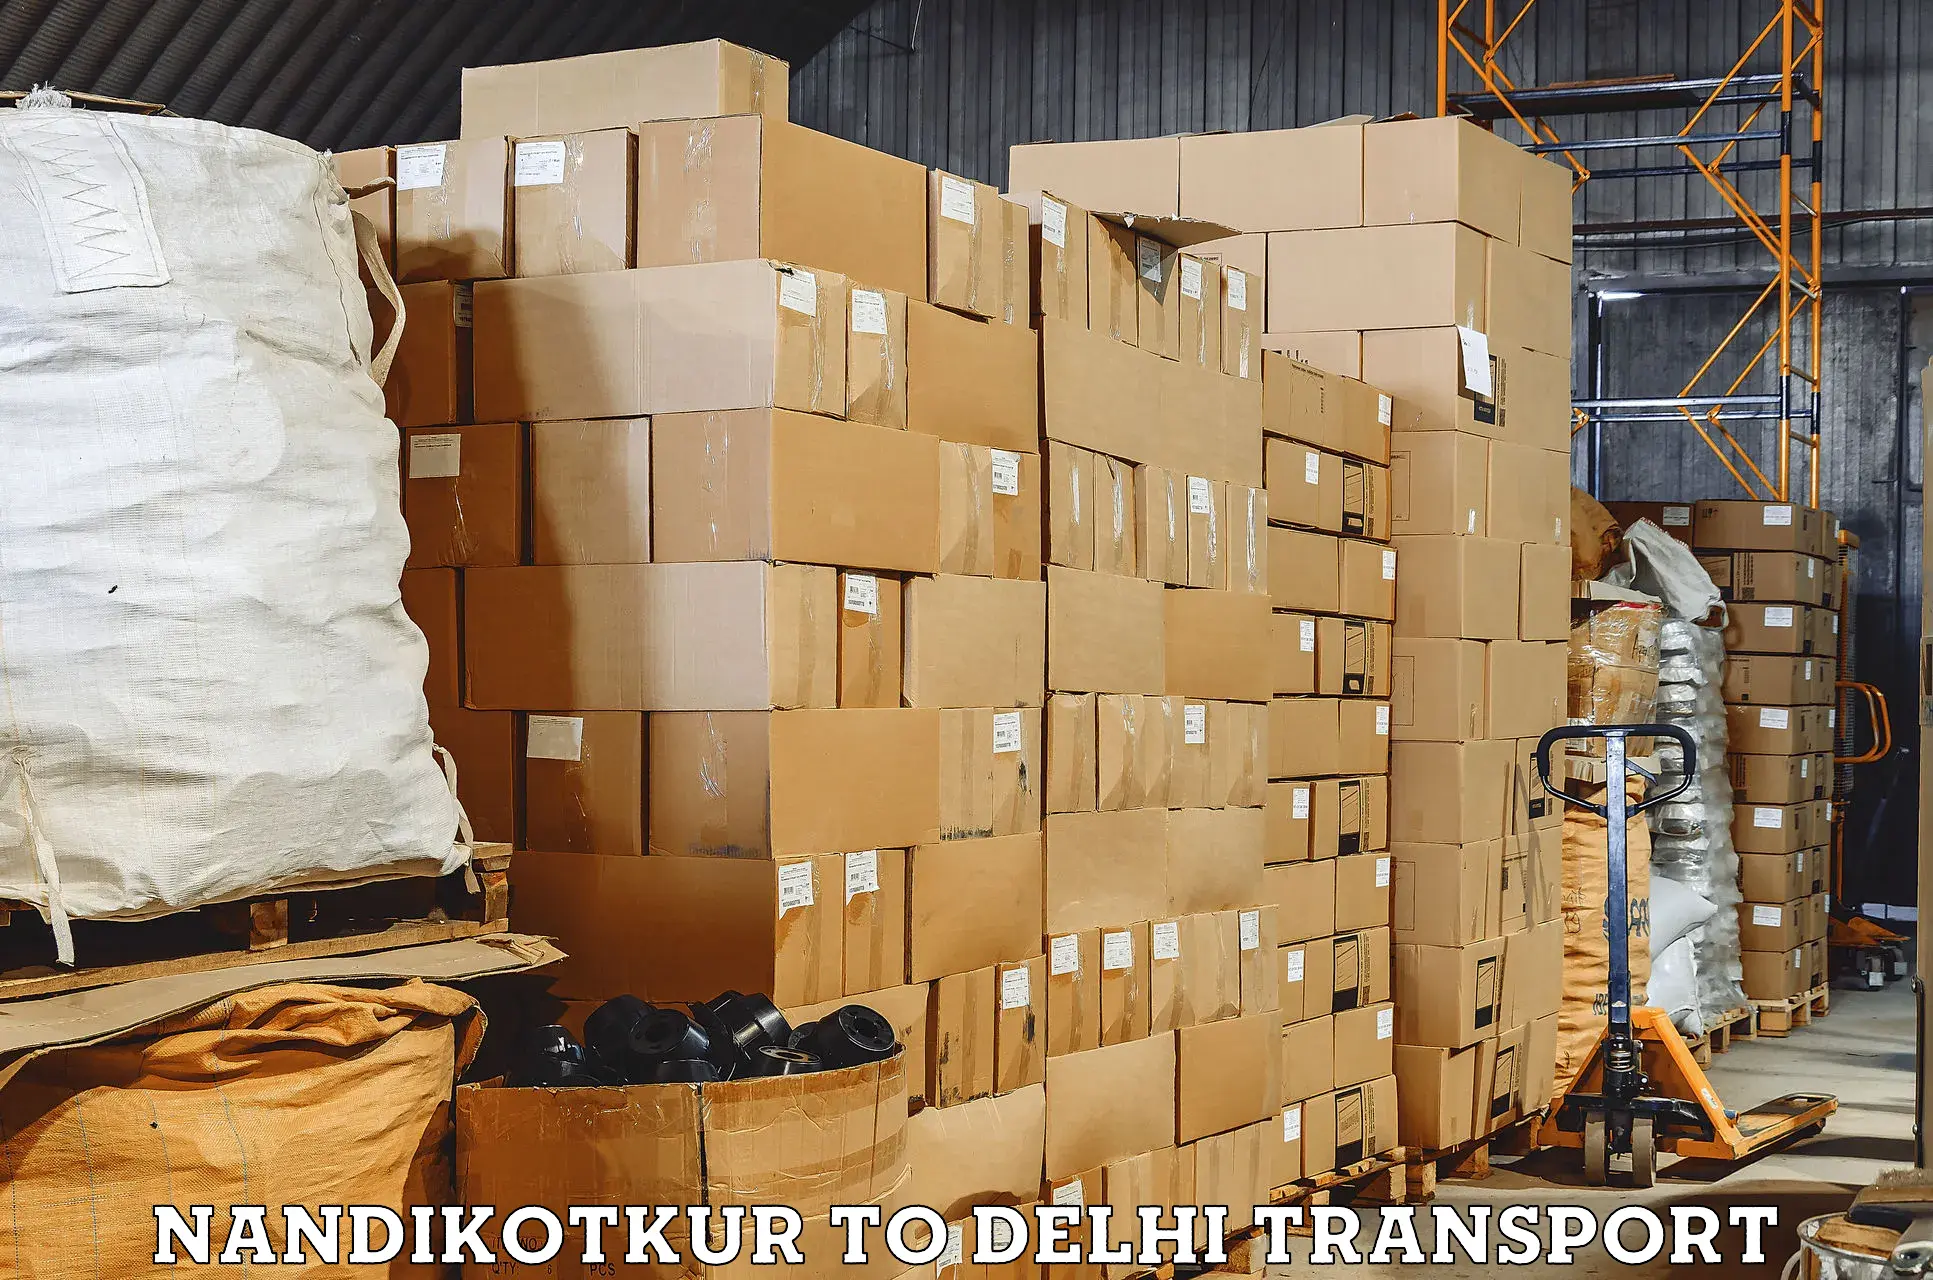 Pick up transport service Nandikotkur to East Delhi